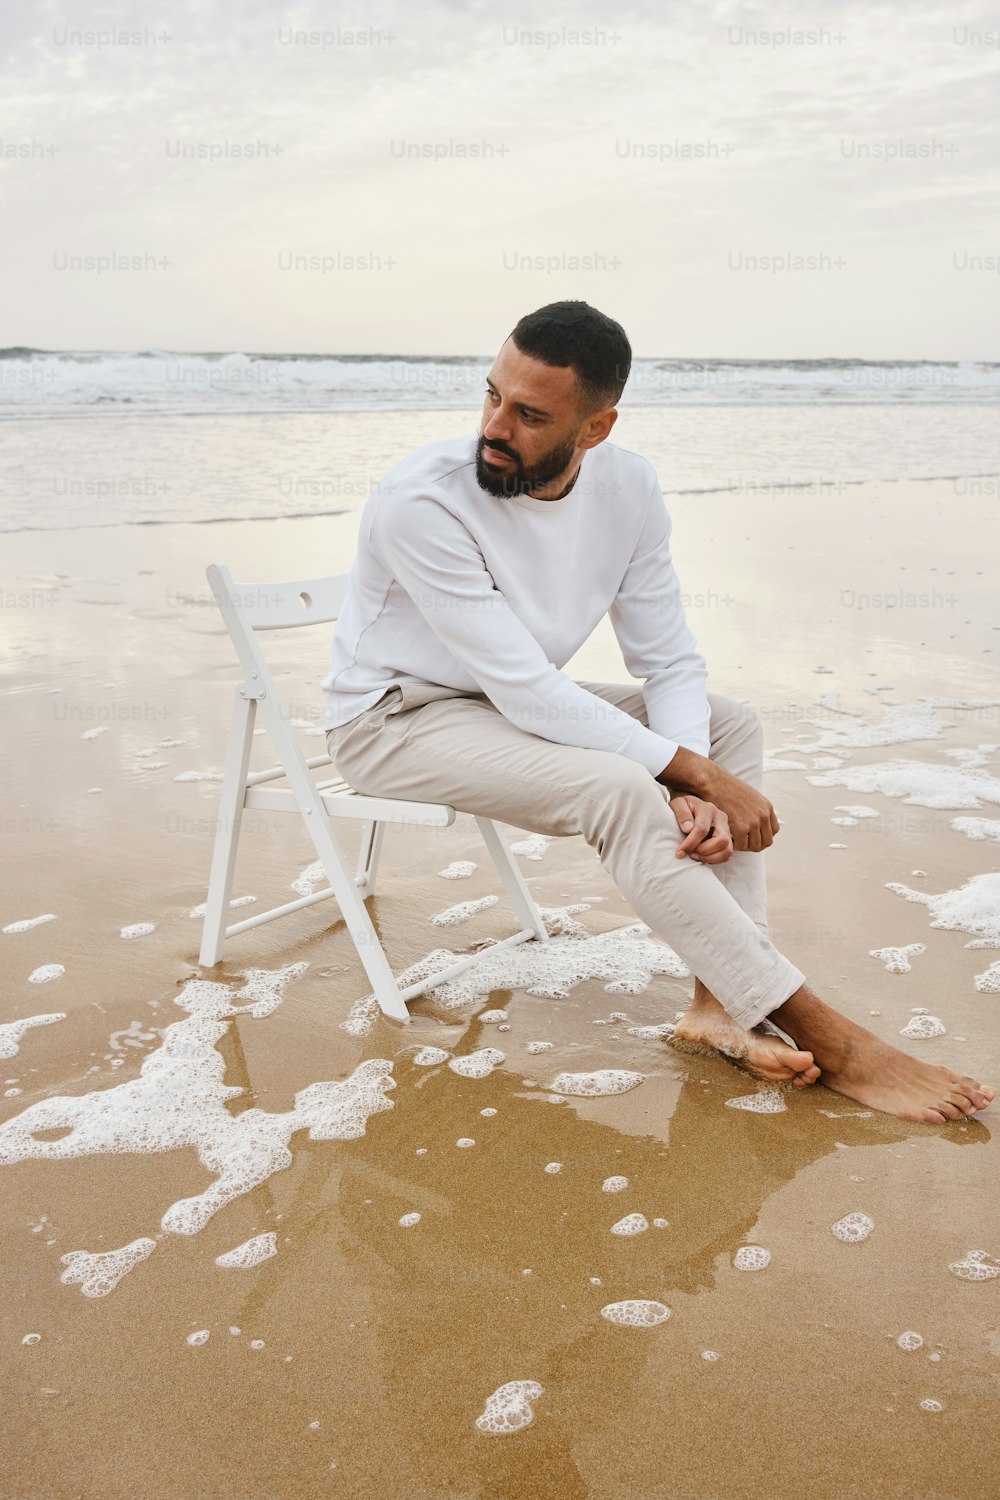 해변 꼭대기에 ��있는 하얀 의자 위에 앉아 있는 남자